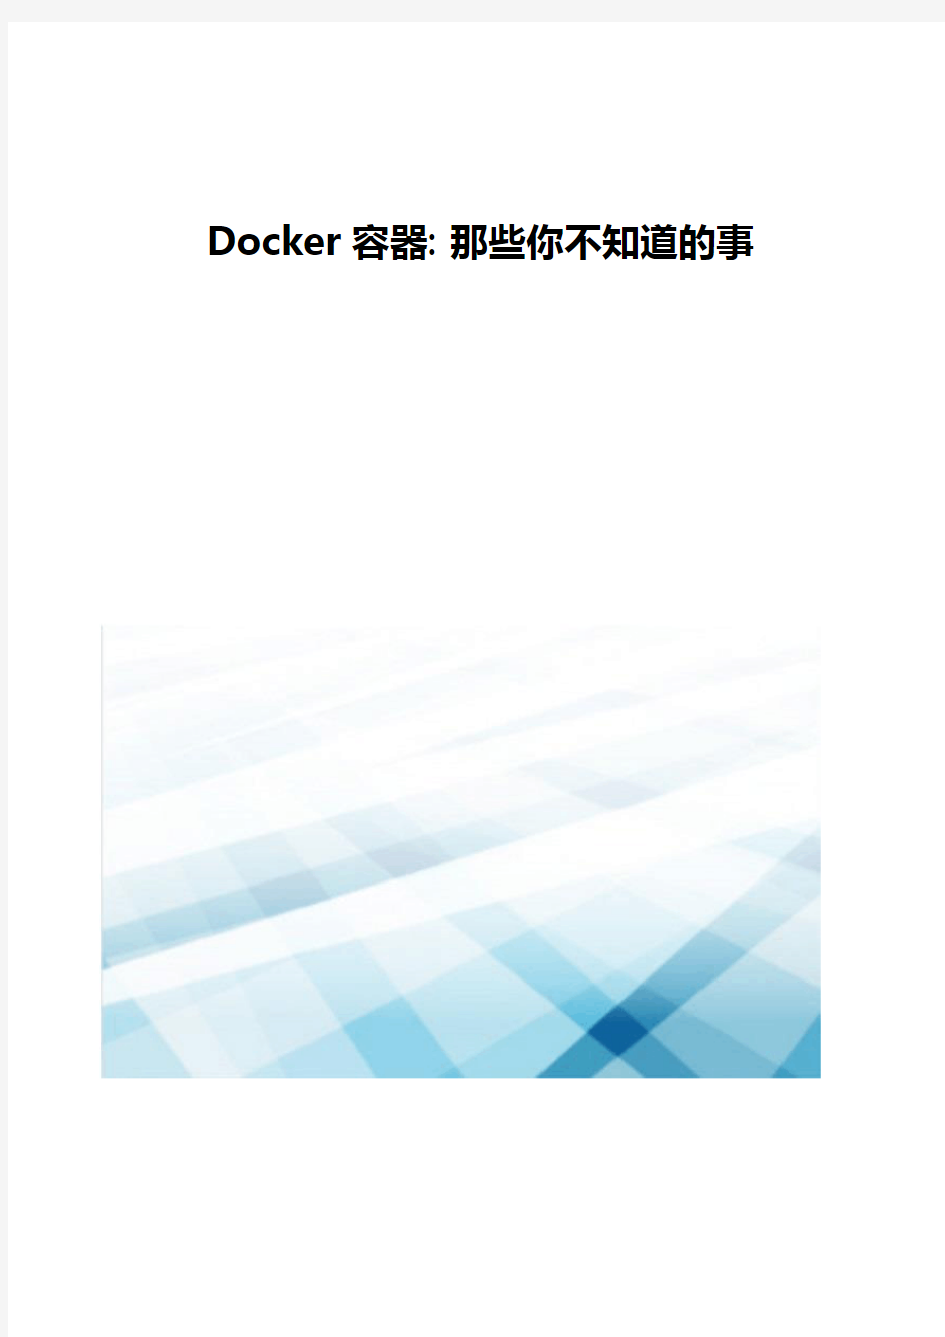 Docker容器-那些你不知道的事